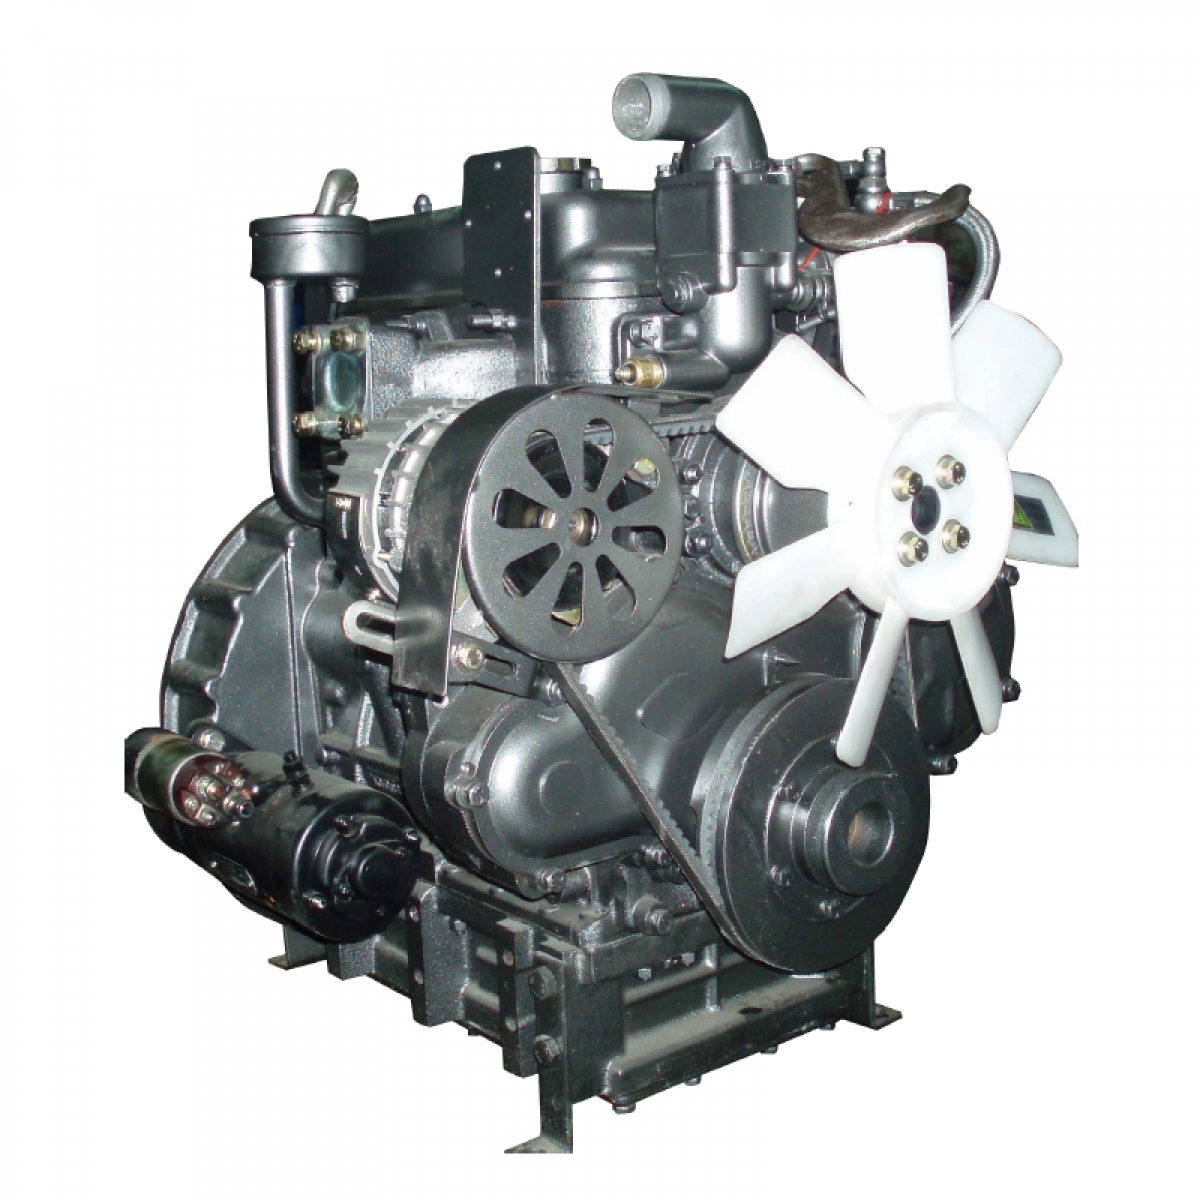 Запчасти на двигатель (КМ385ВТ) вод. охлаждение DongFeng 240/244, Foton 240/244, Jinma 240/244